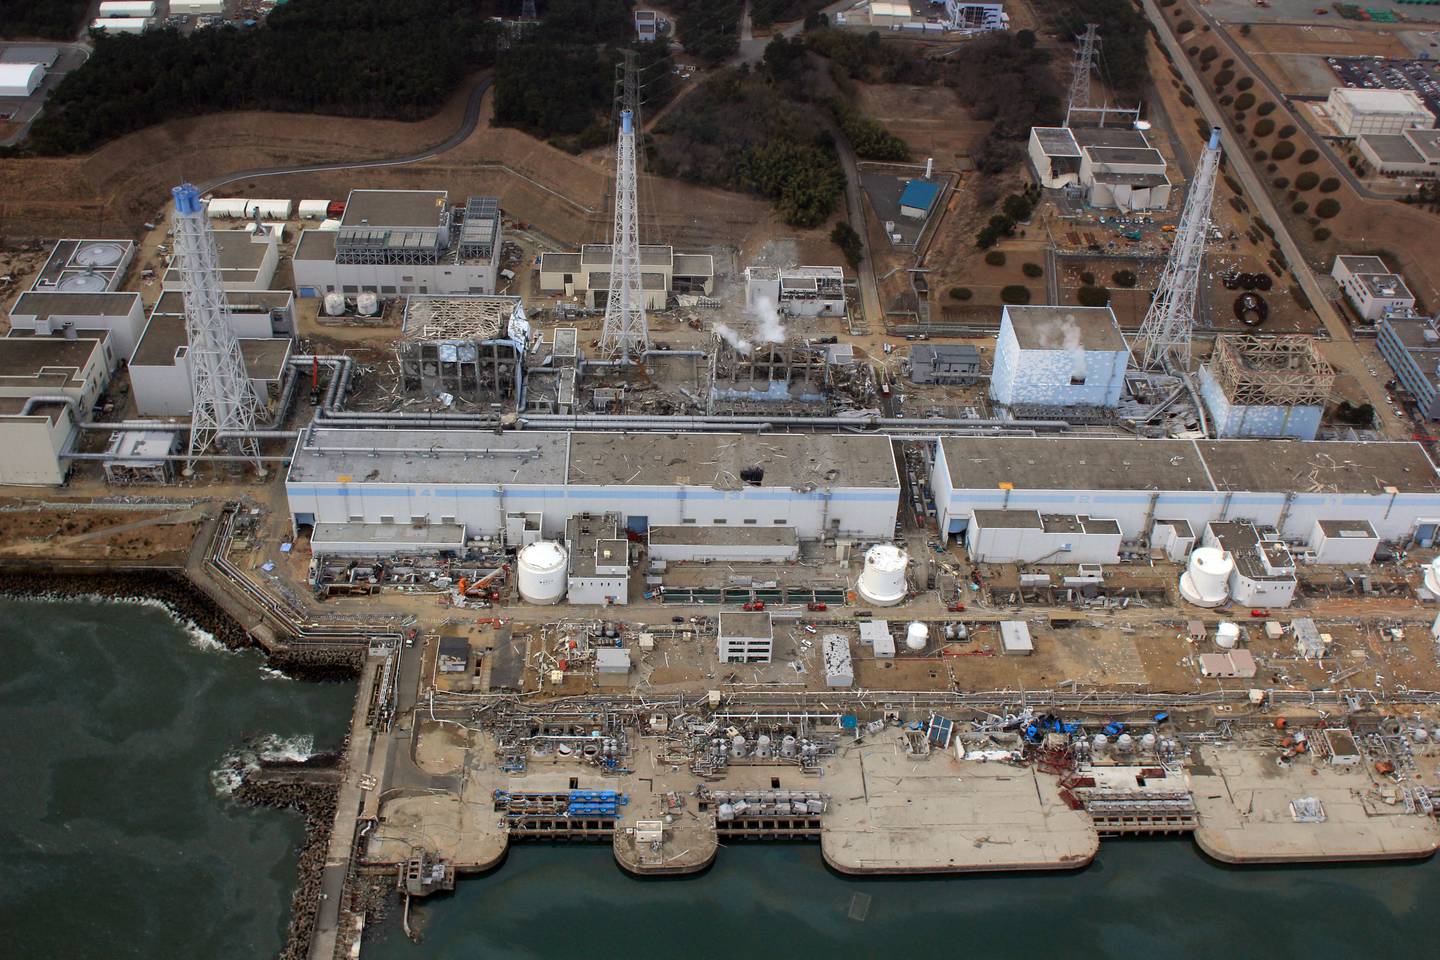 Unos 12 años después de uno de los peores desastres nucleares del mundo, el primer ministro de Japón dijo que la liberación de agua de refrigeración de la averiada planta nuclear comenzará el 24 de agosto, a pesar de la oposición de los pescadores y las protestas de China.